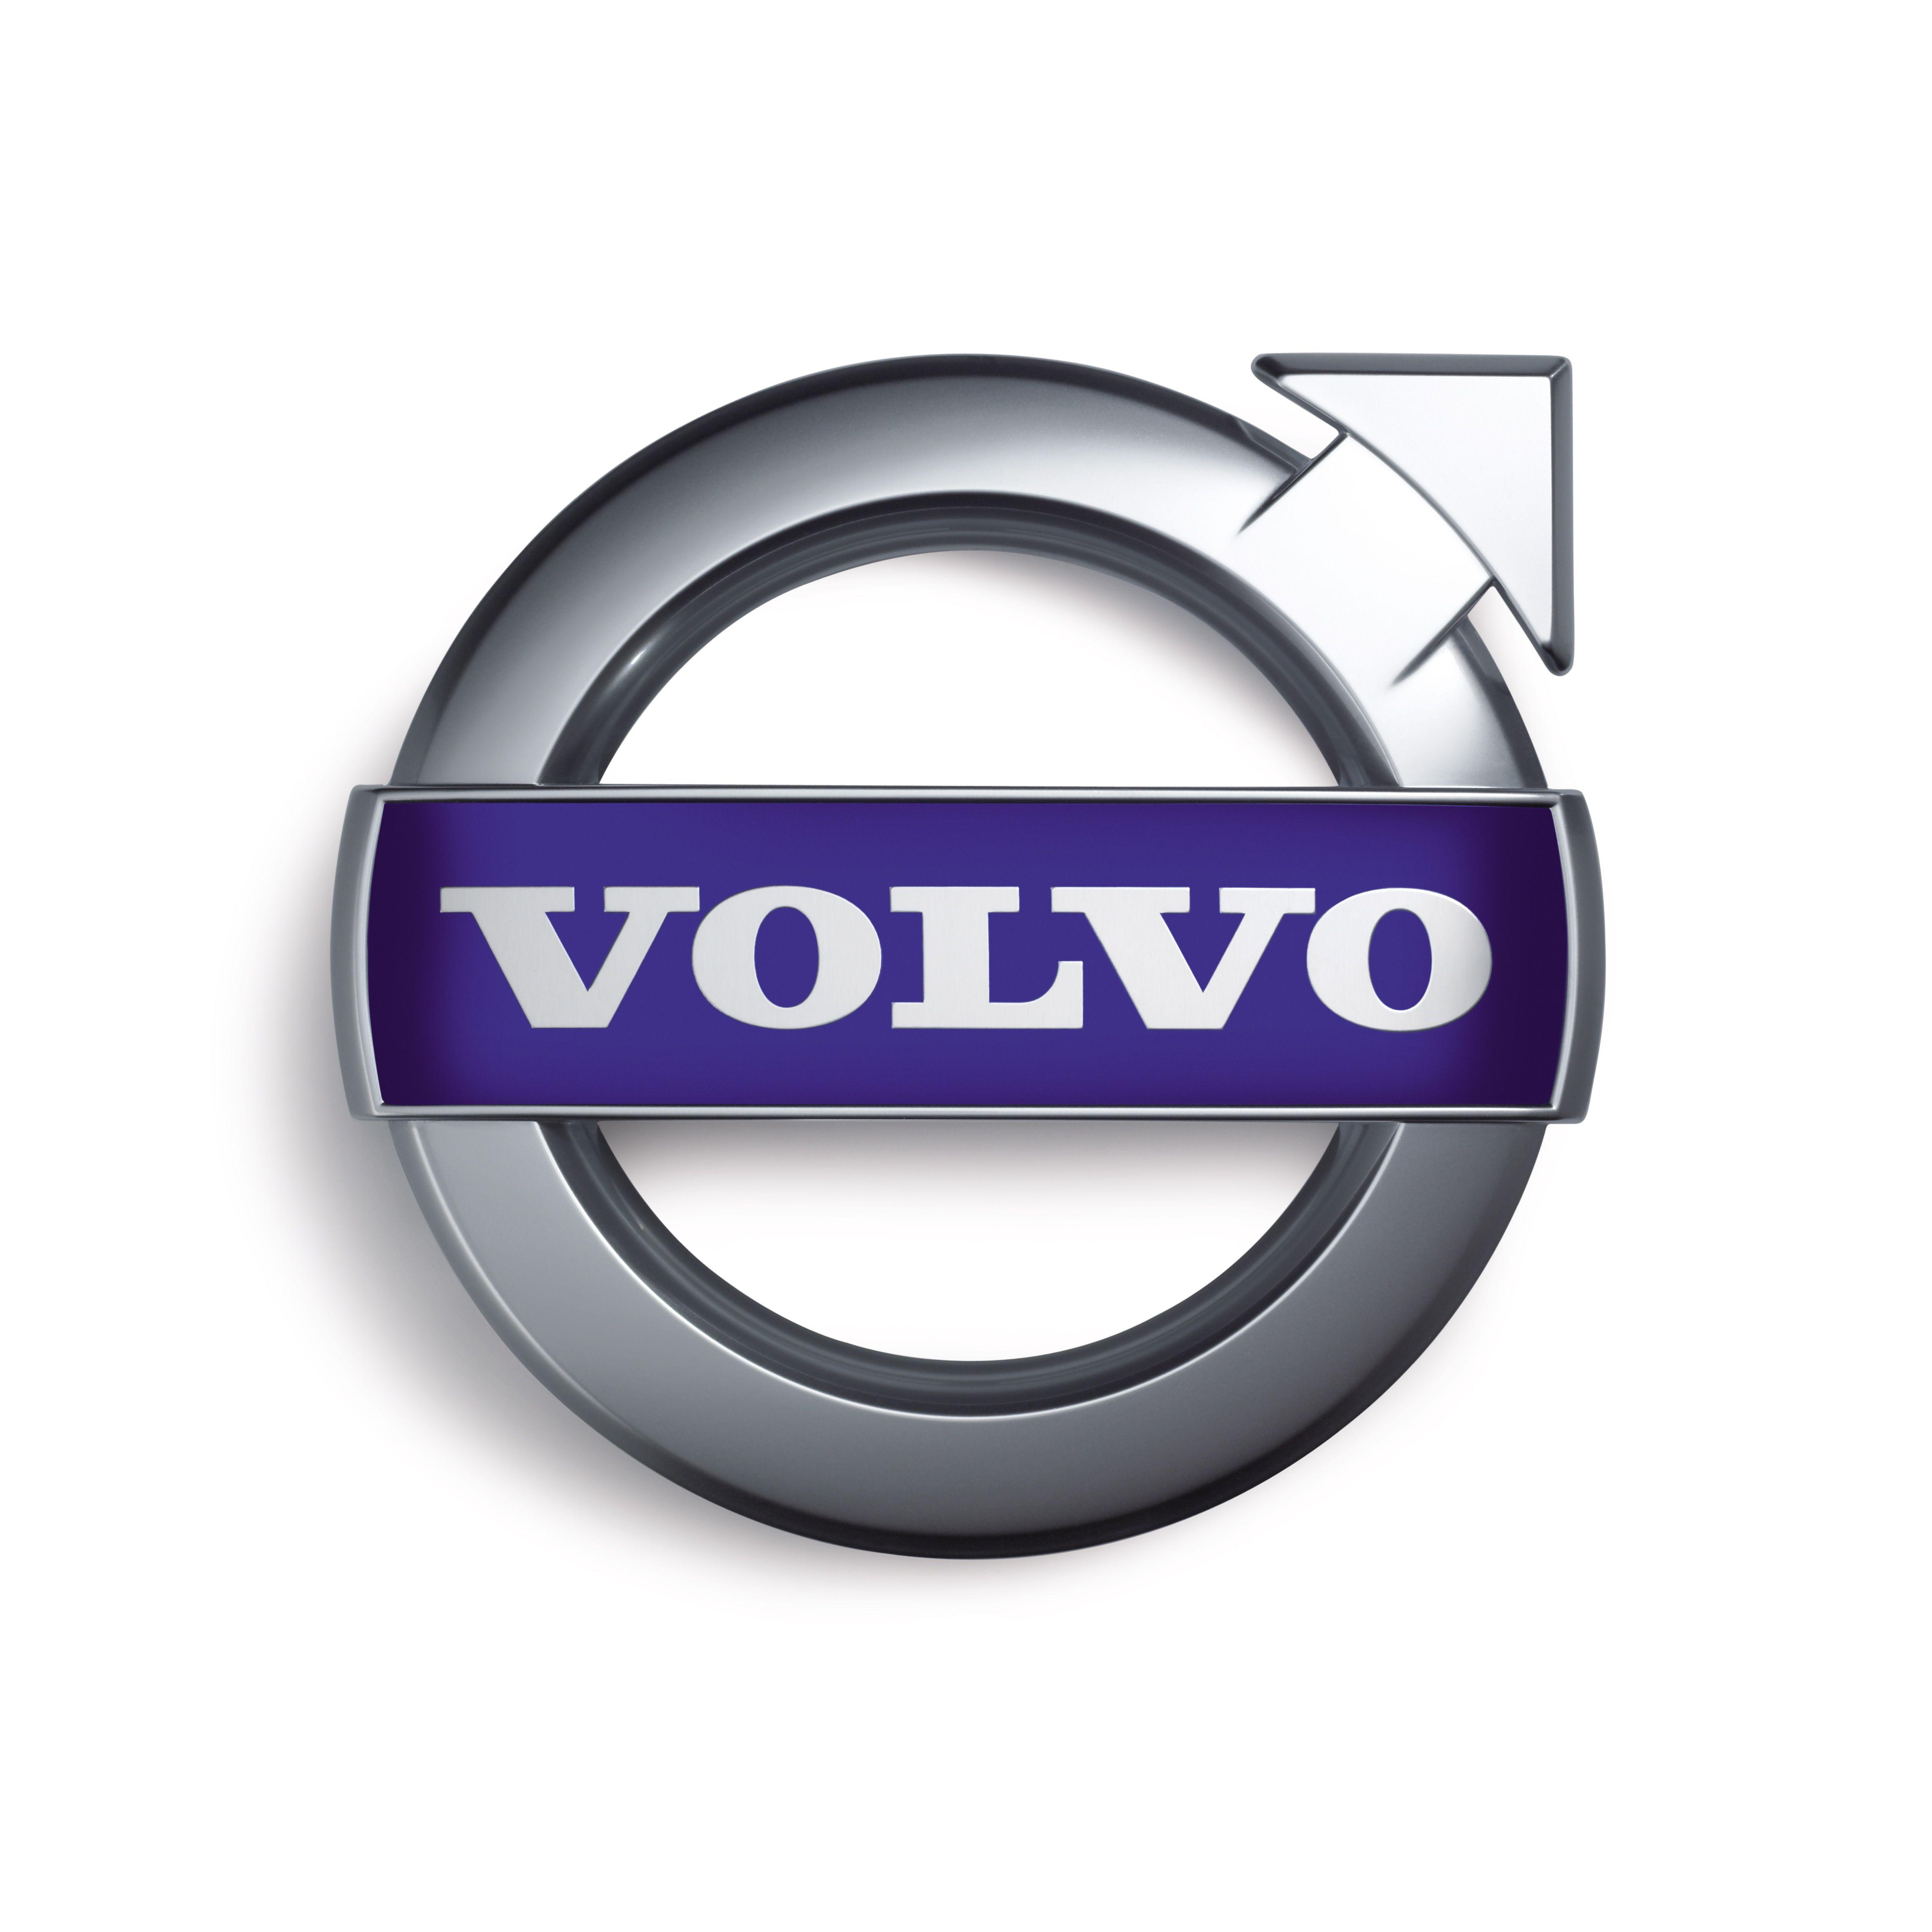 Volvo Bus Logo - Volvo trucks Logos